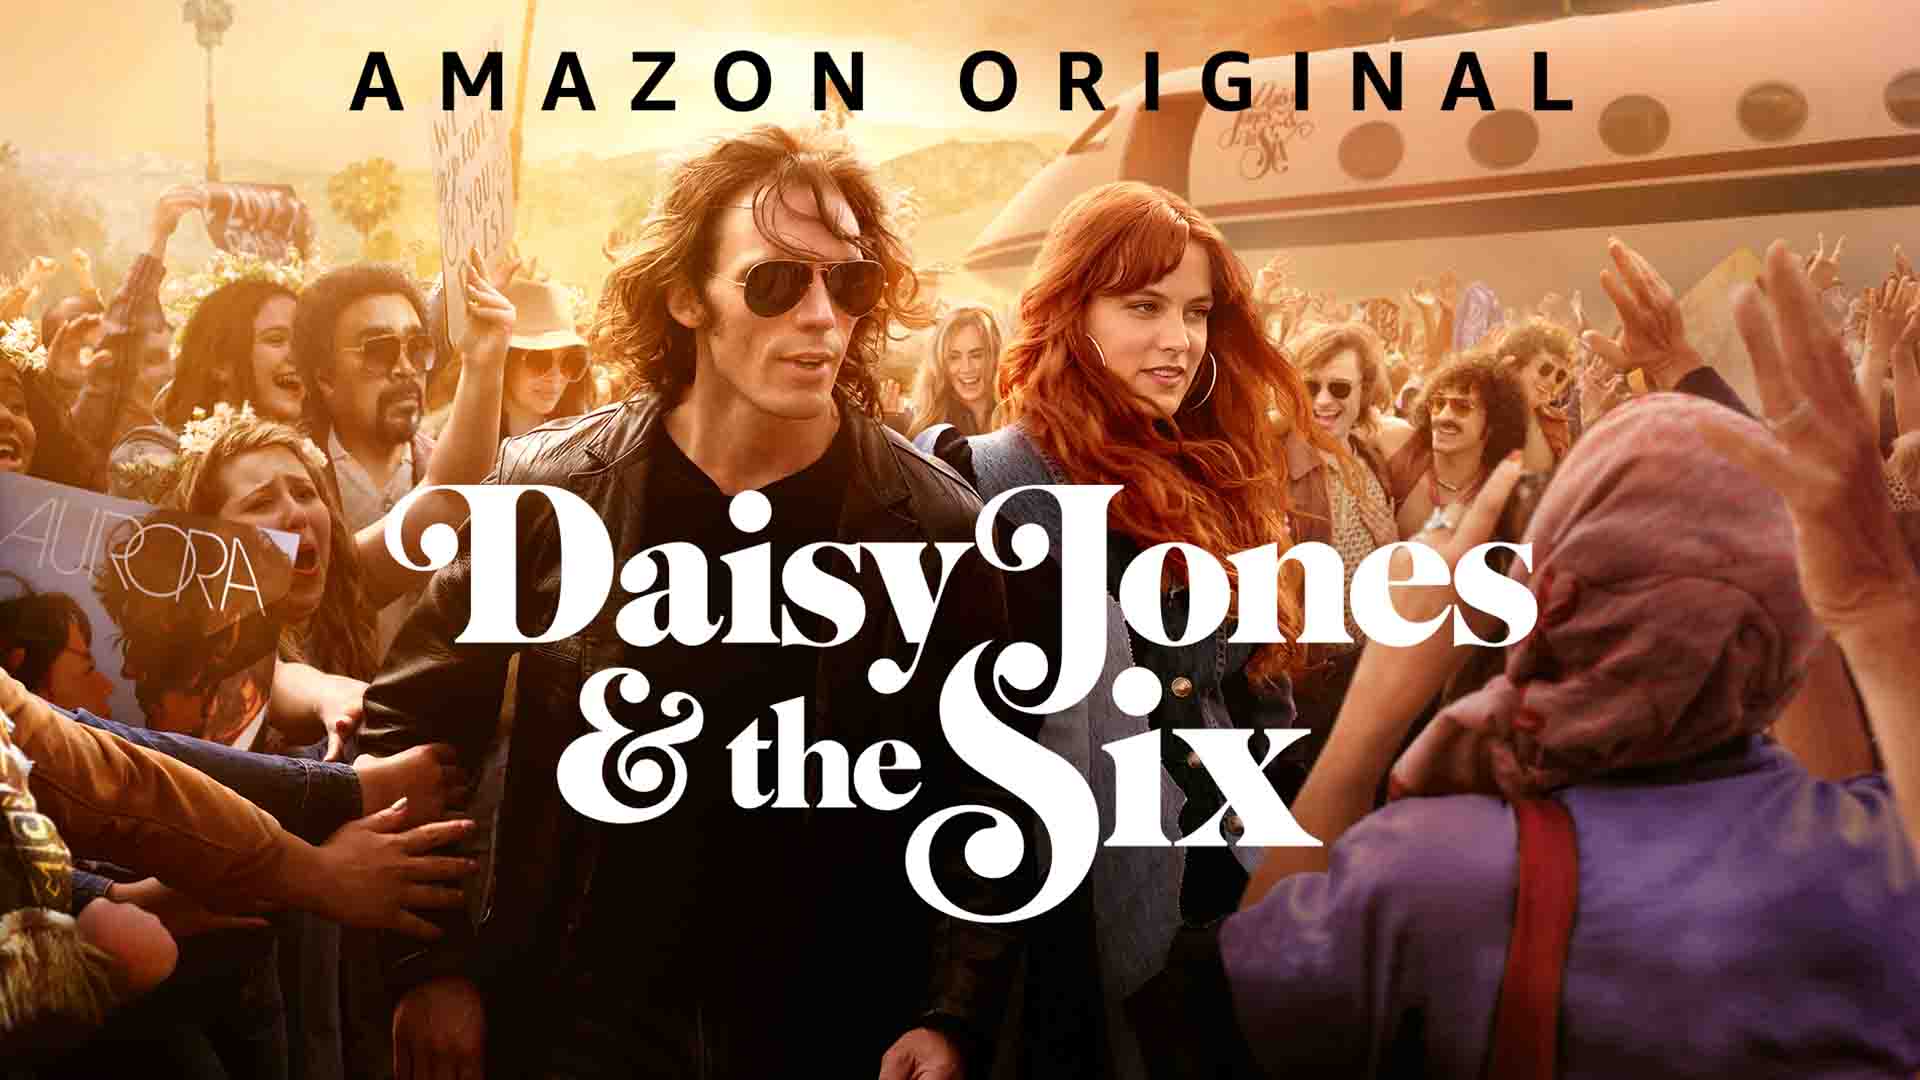 معرفی سریال دیزی جونز و شش نفر (Daisy Jones & The Six)